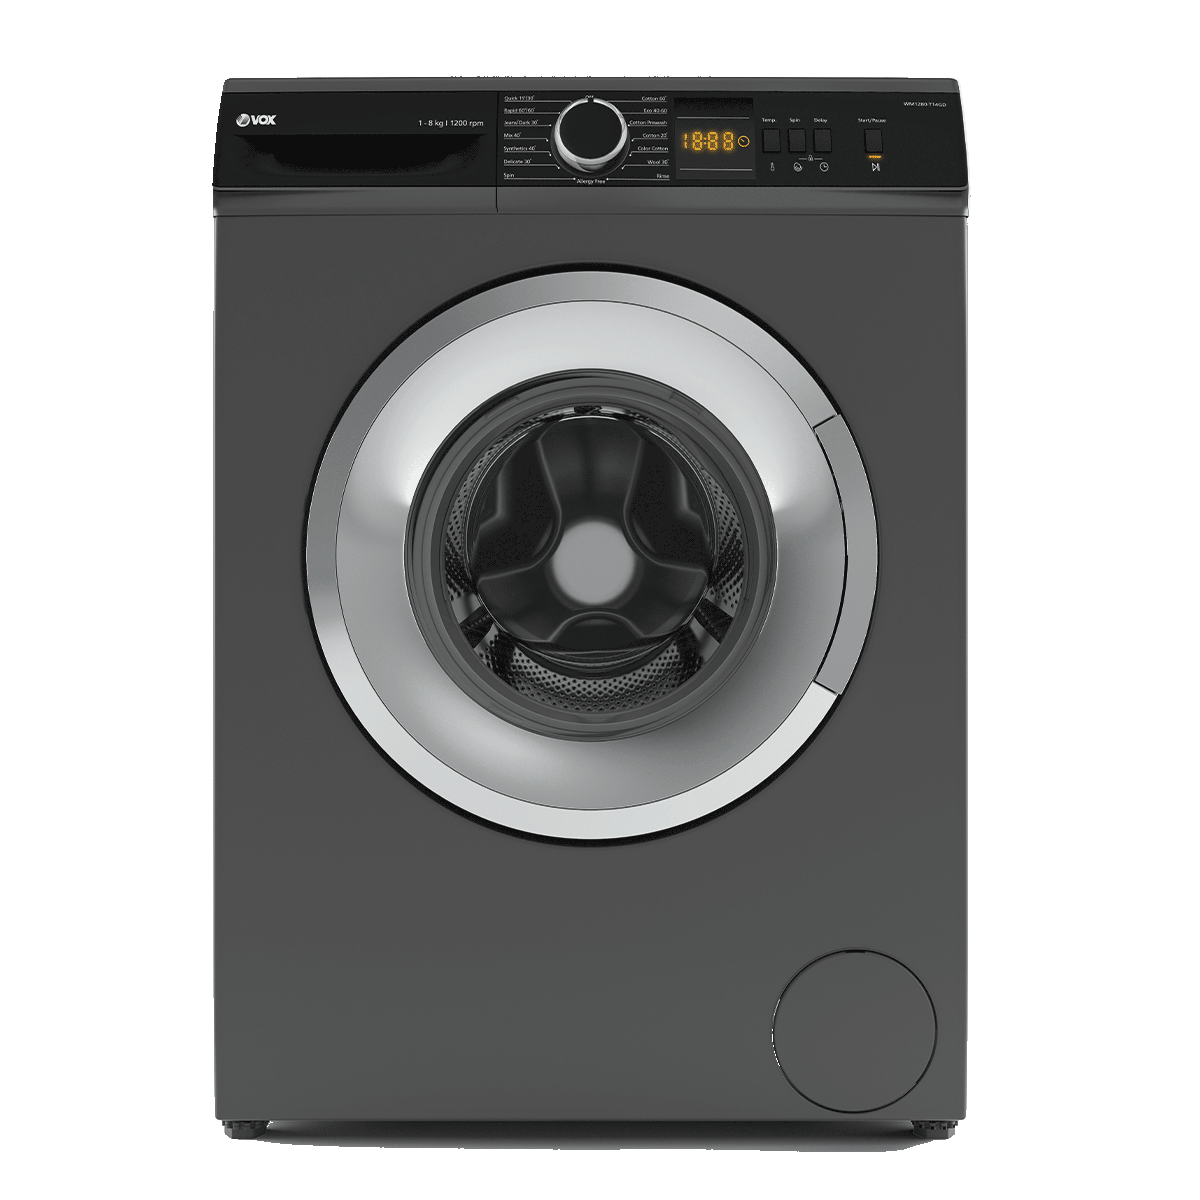 Стиральная машина Beko VOX WM 1280-T14GD (черный, 15 прог, 1200 прог, дисплей)